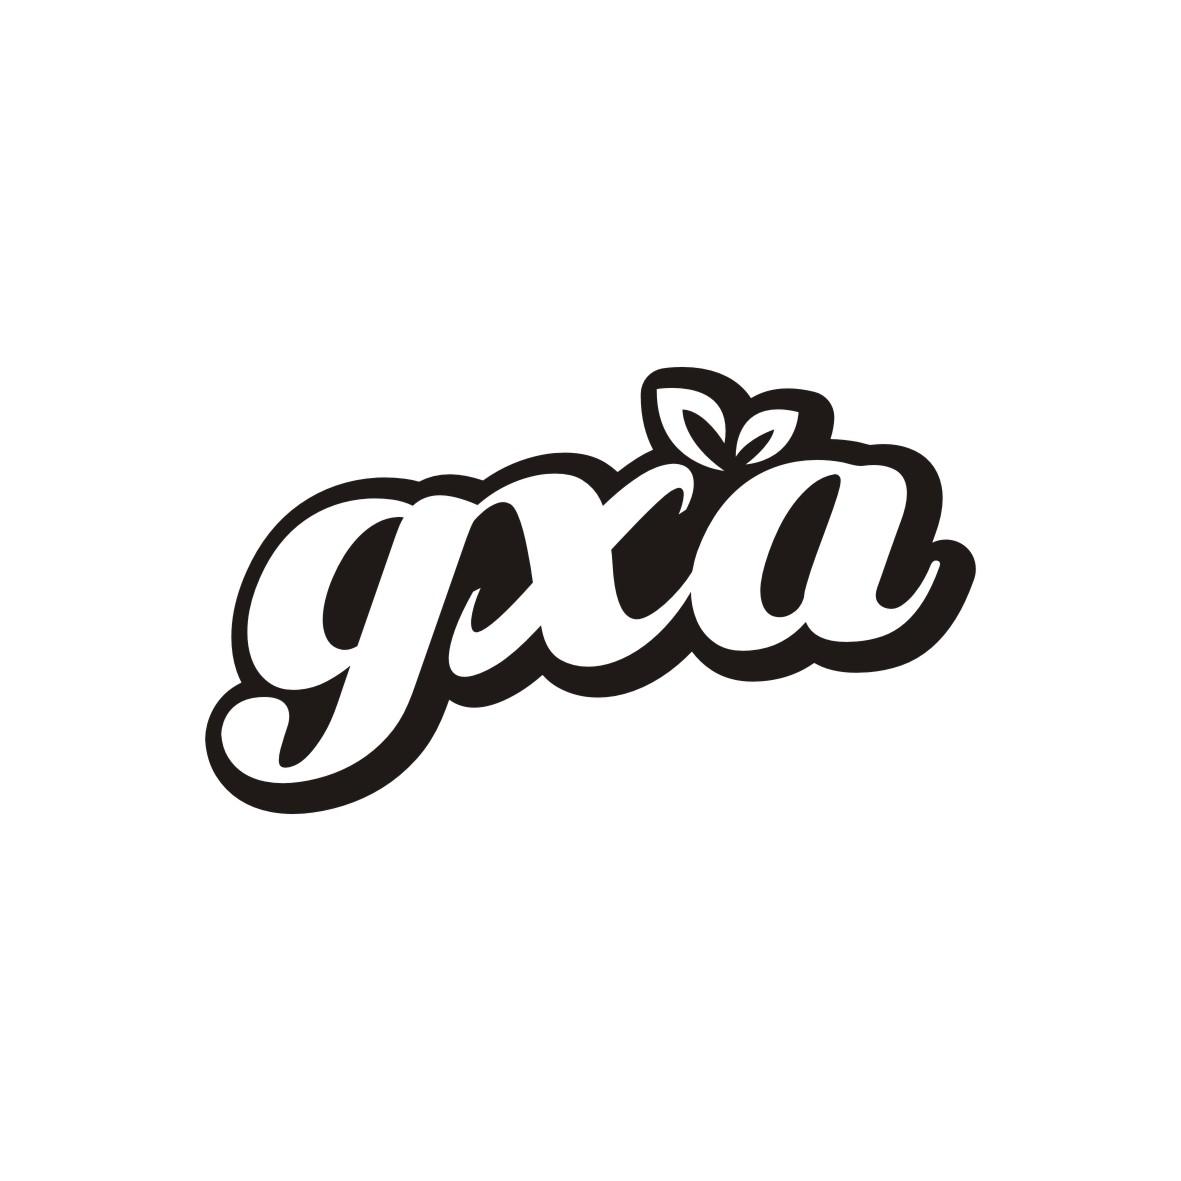 转让商标-GXA